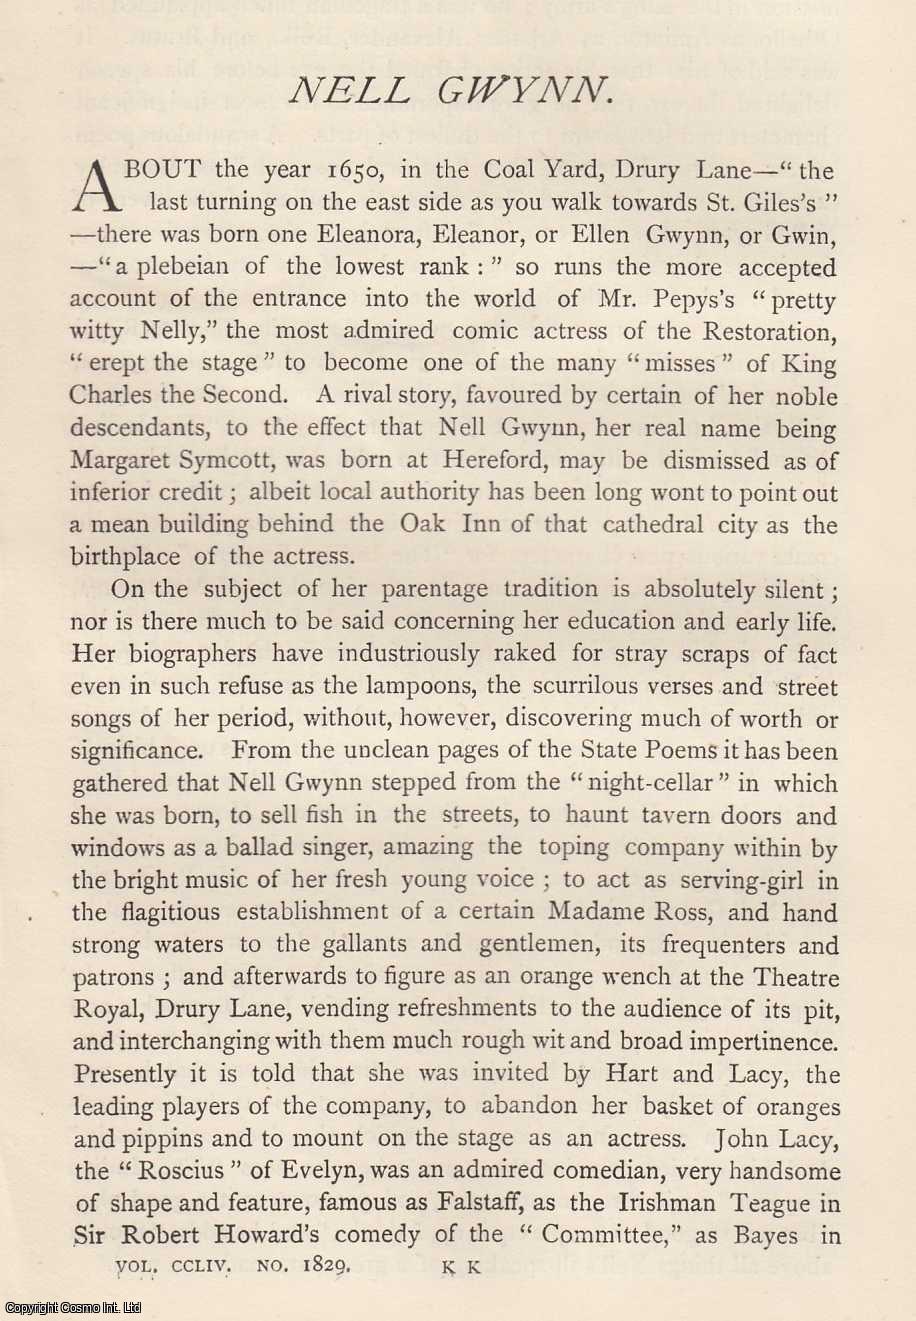 Dutton Cook - Nell Gwynn. An original article from the Gentleman's Magazine, 1883.